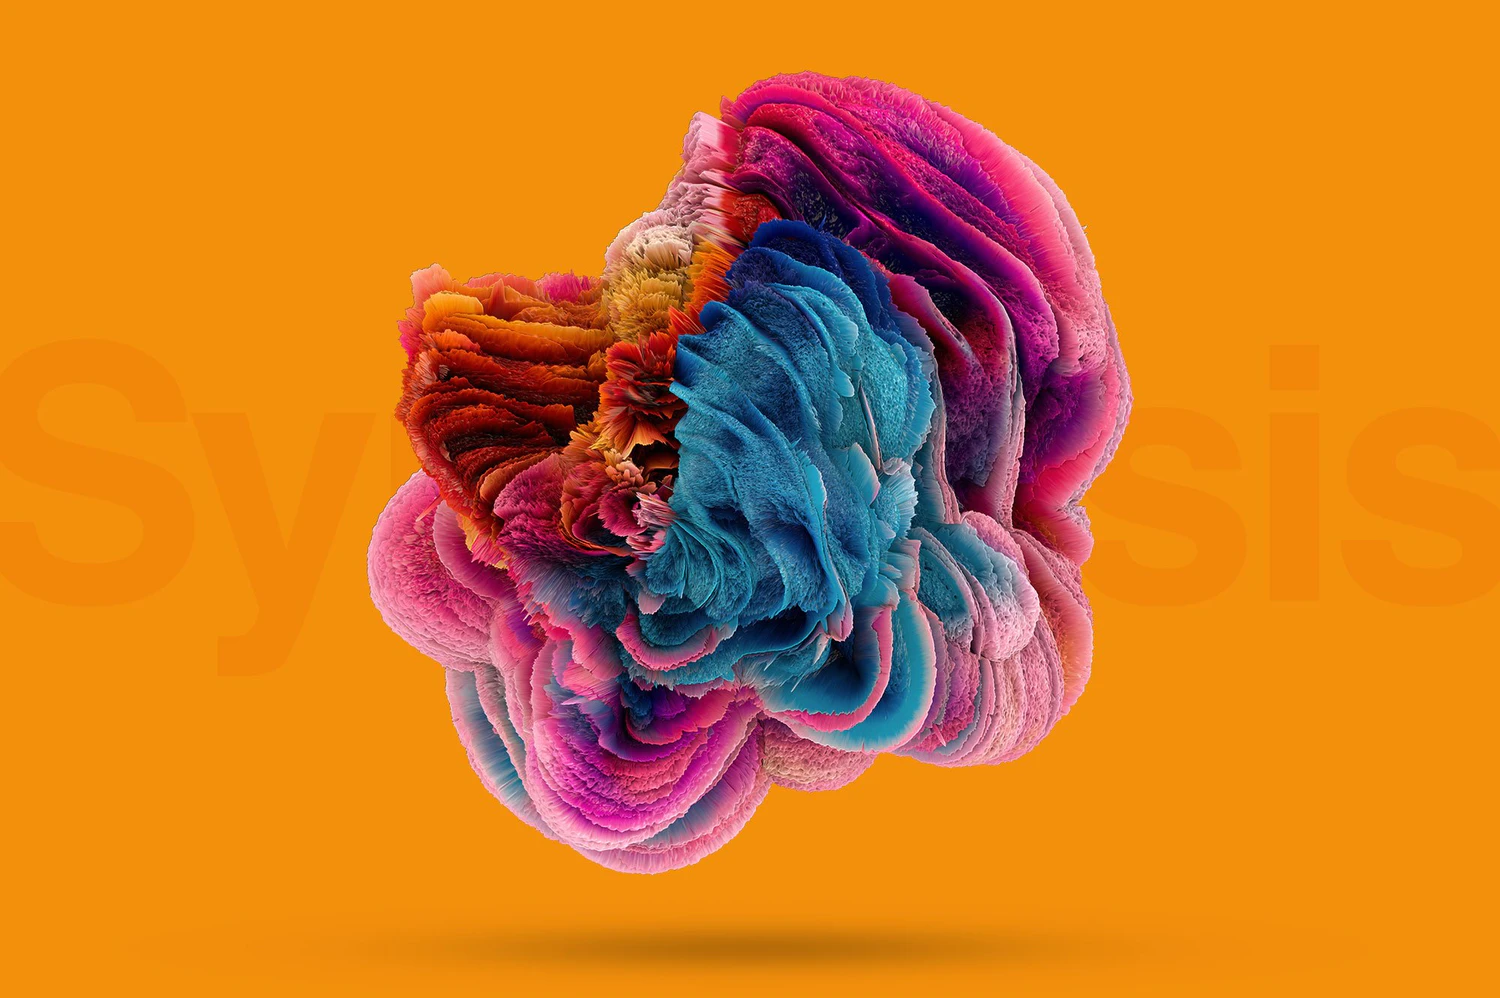 5212 15张高清3D抽象艺术爆炸流体背景图片素材丙烯纹理包装设计音乐会海报专辑艺术背景素材 Synthesis Mind-bending Shapes@GOOODME.COM